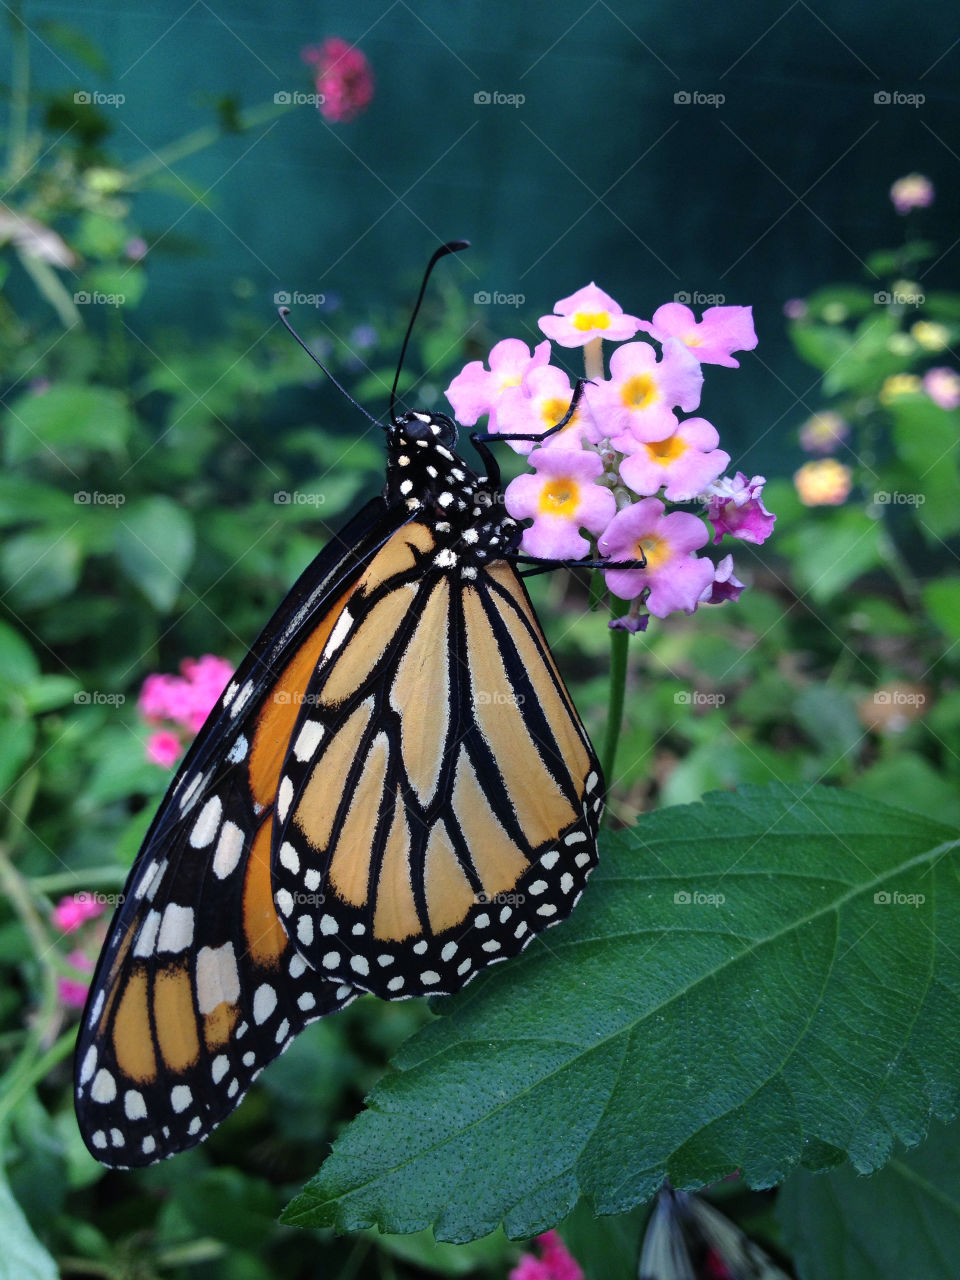 Butterfly monarch on flower